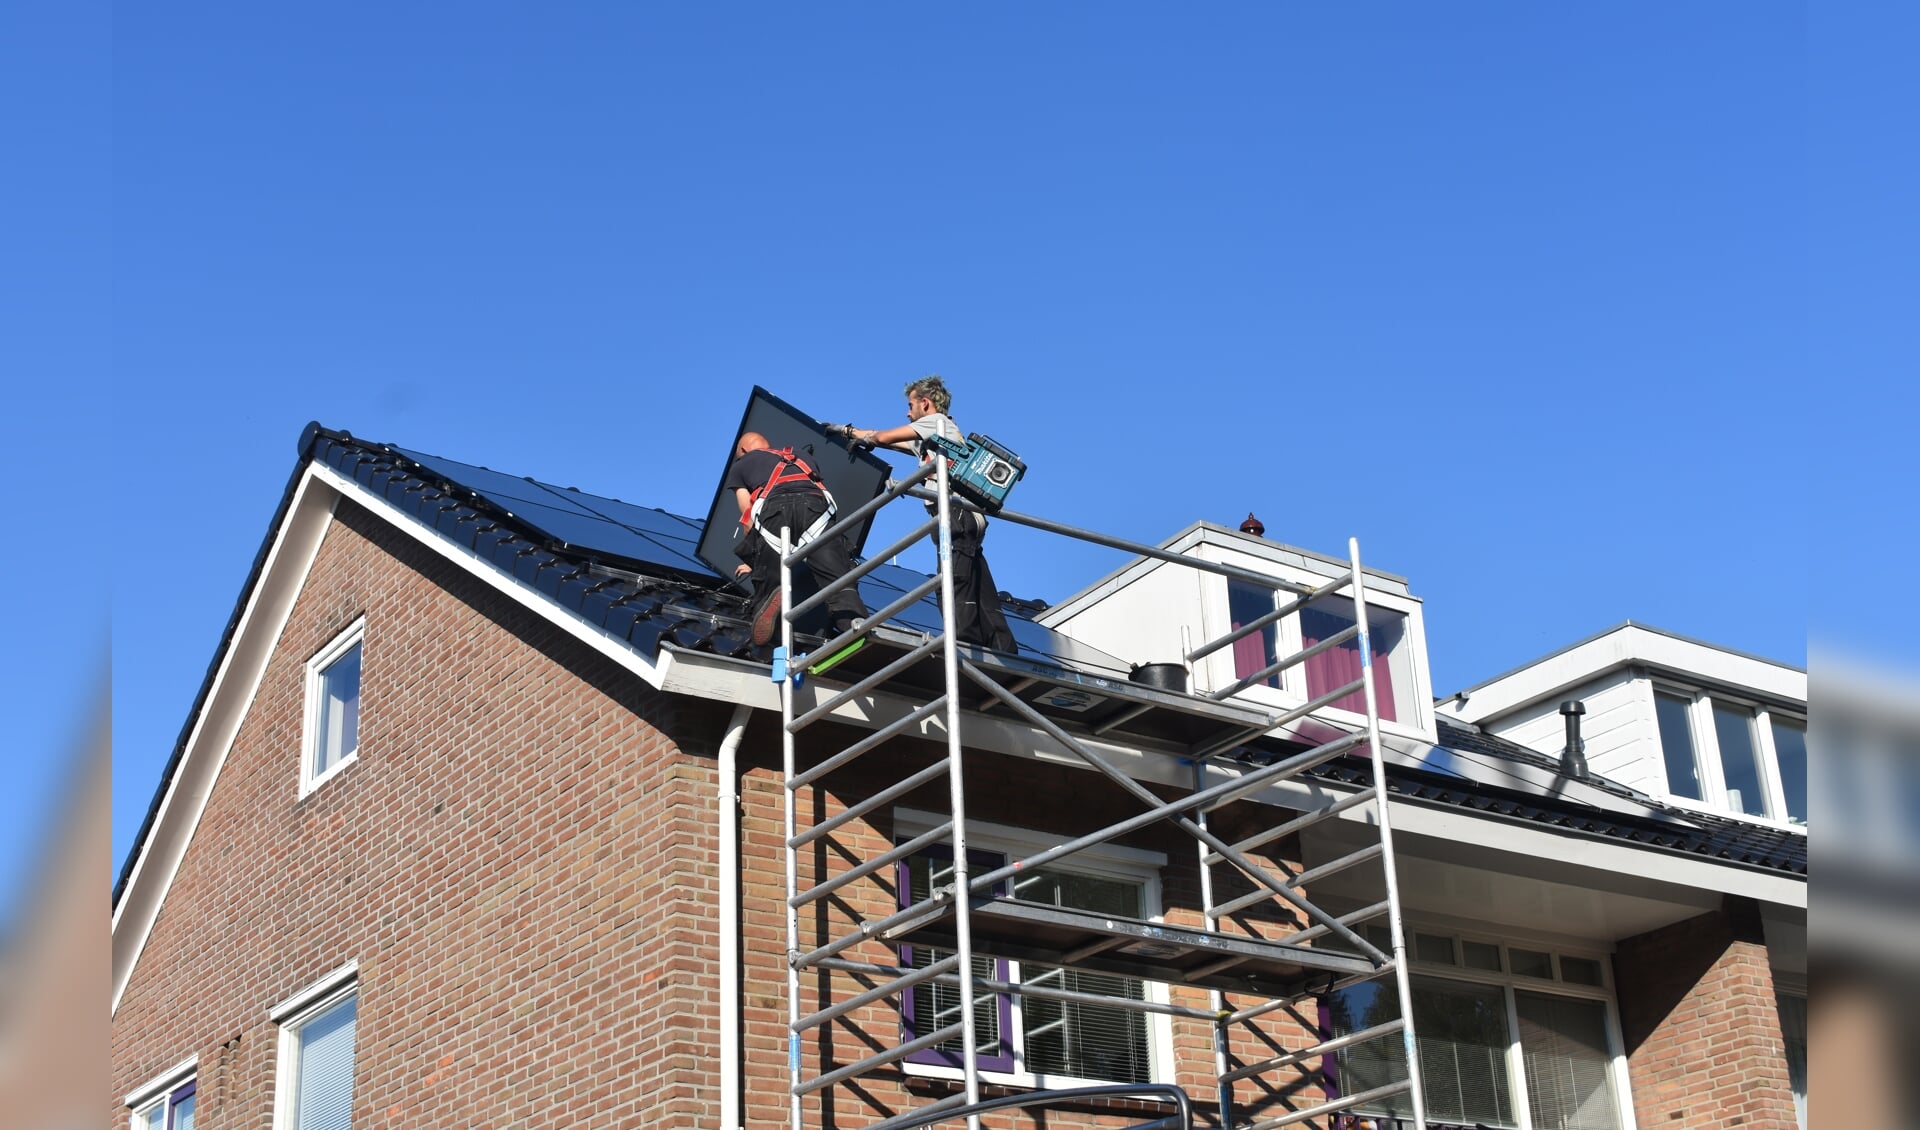 Medewerkers van Solar-Systemen.nl in Drachten leggen twintig zonnepanelen op het dak van een woning aan de Gauke Boelensstraat in Drachten.